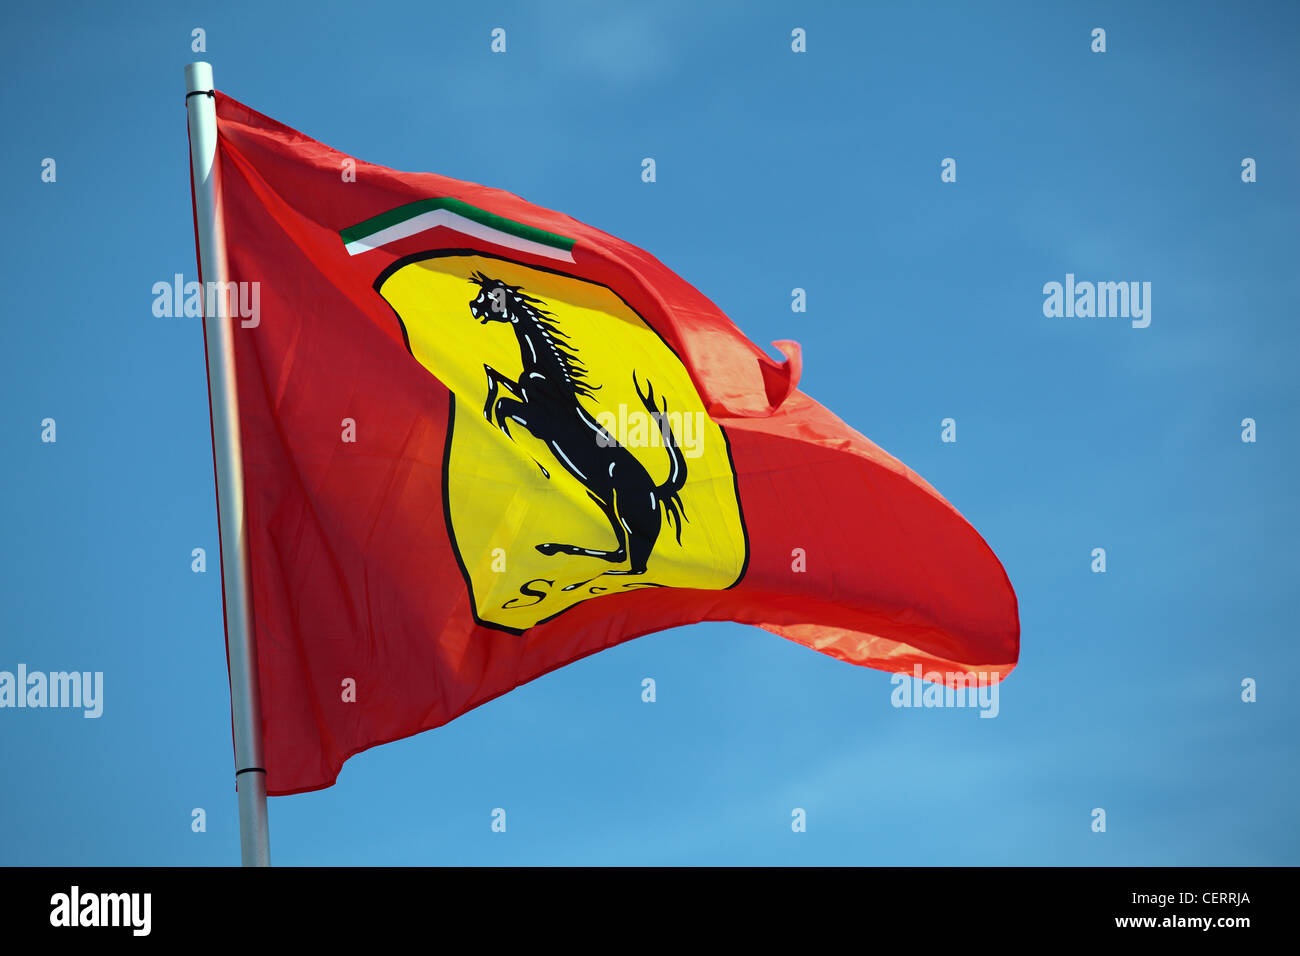 Ferrari flag flying against a blue sky Stock Photo